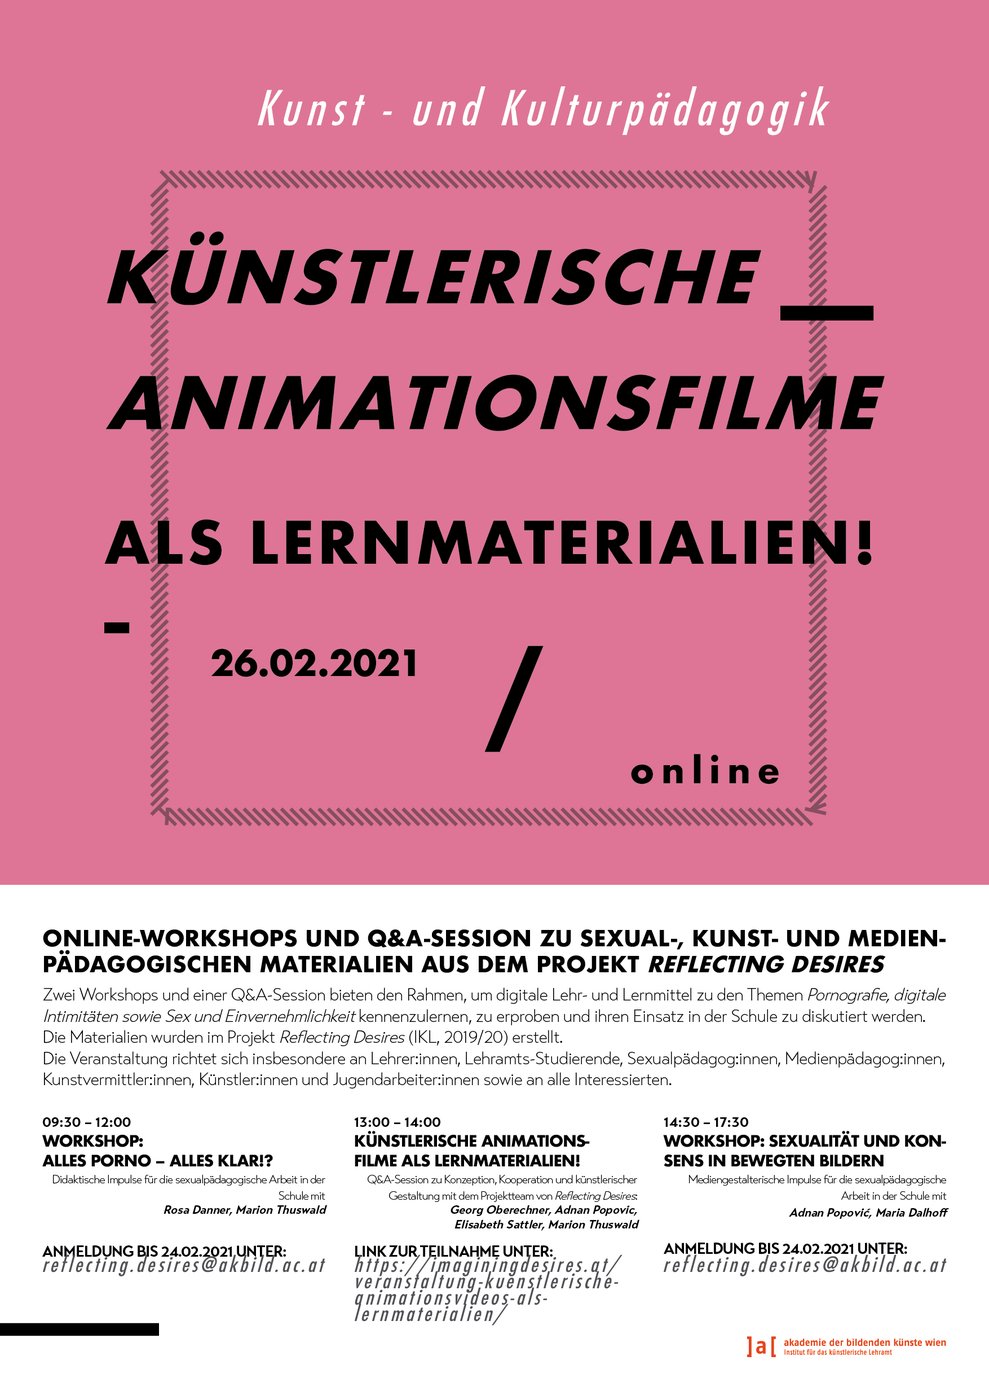 Plakat mit Veranstaltungstitel und pinkem Hintergrund